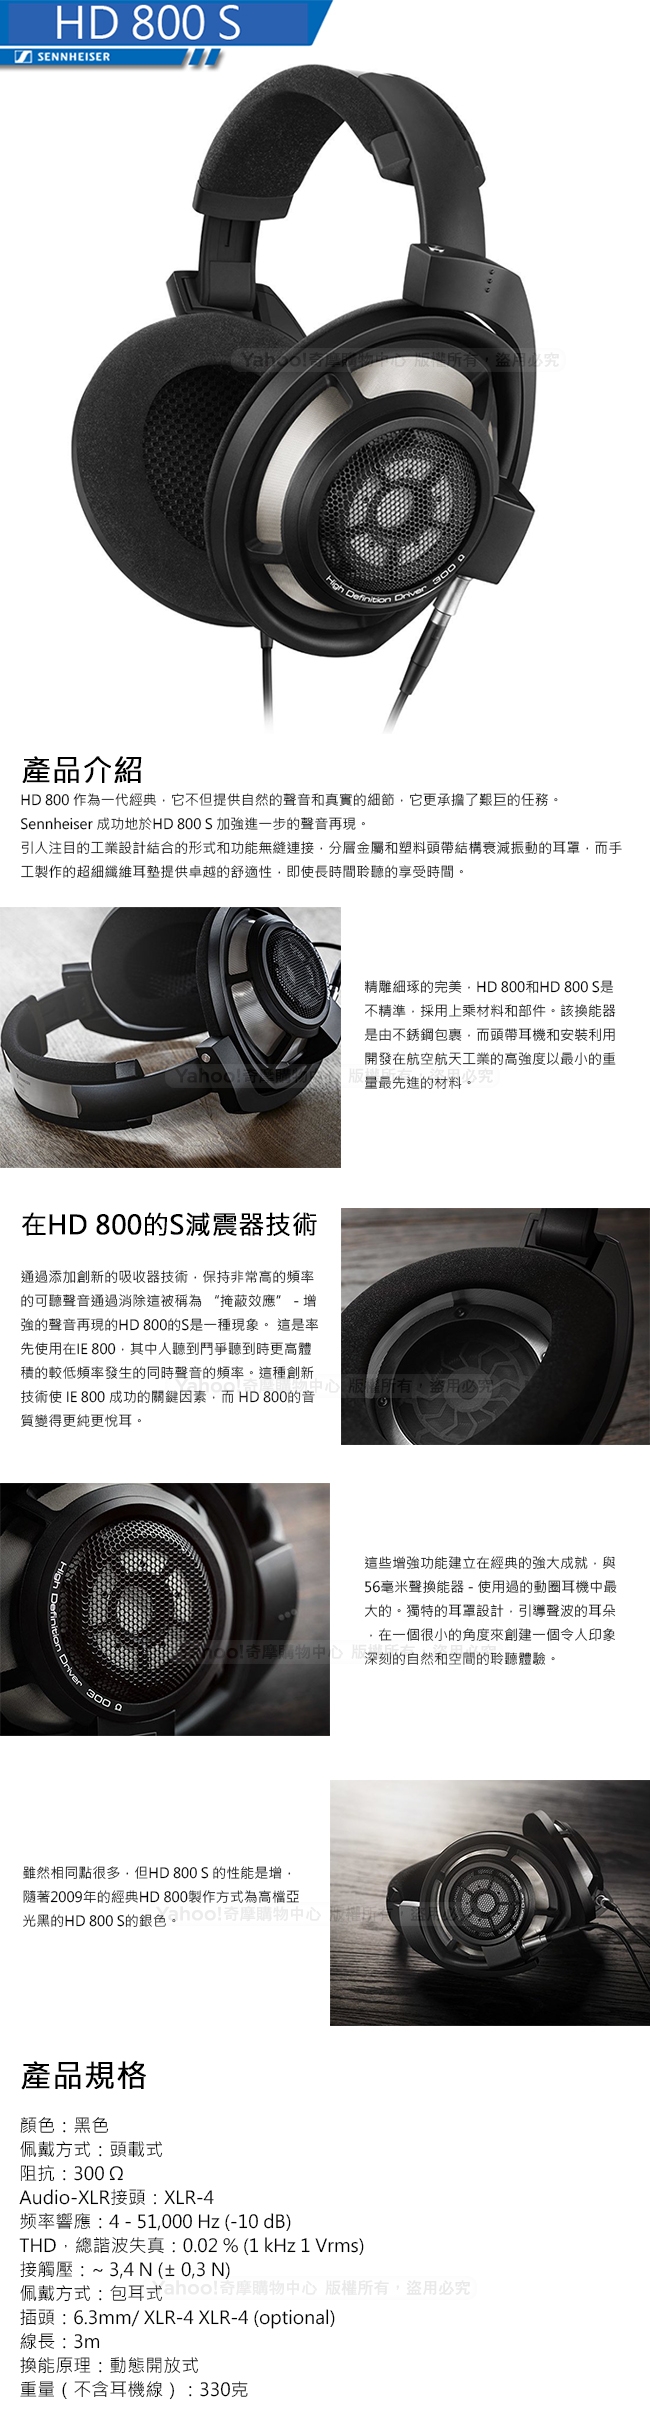 森海塞爾 SENNHEISER HD 800S 頭戴耳罩式耳機